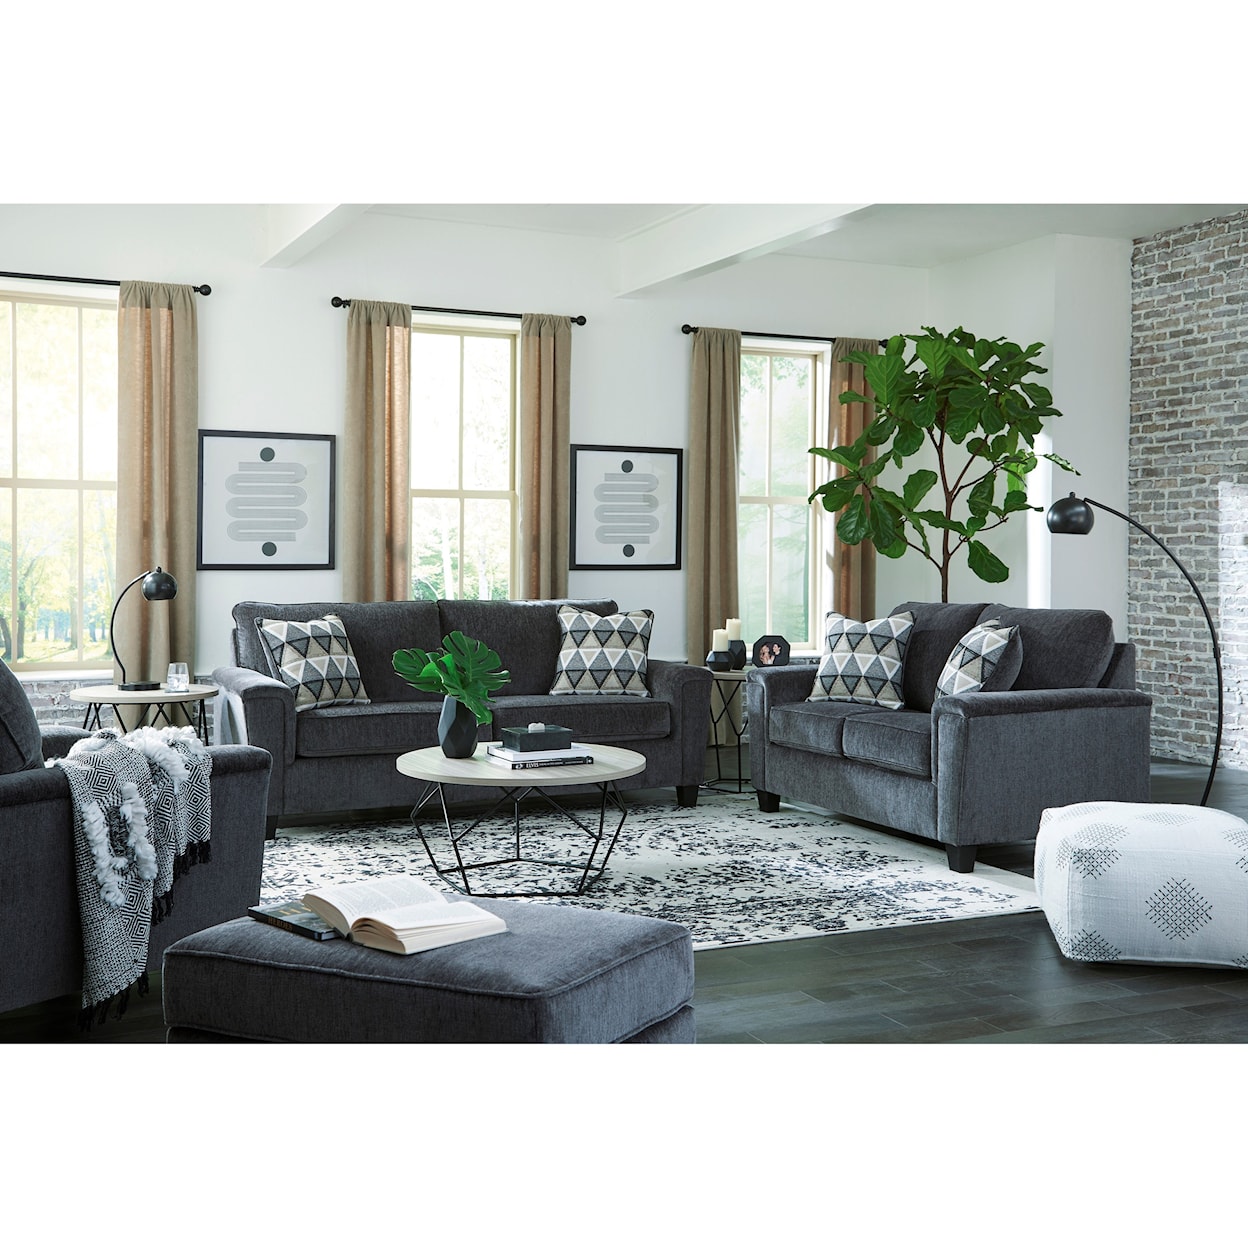 StyleLine Abinger Living Room Group